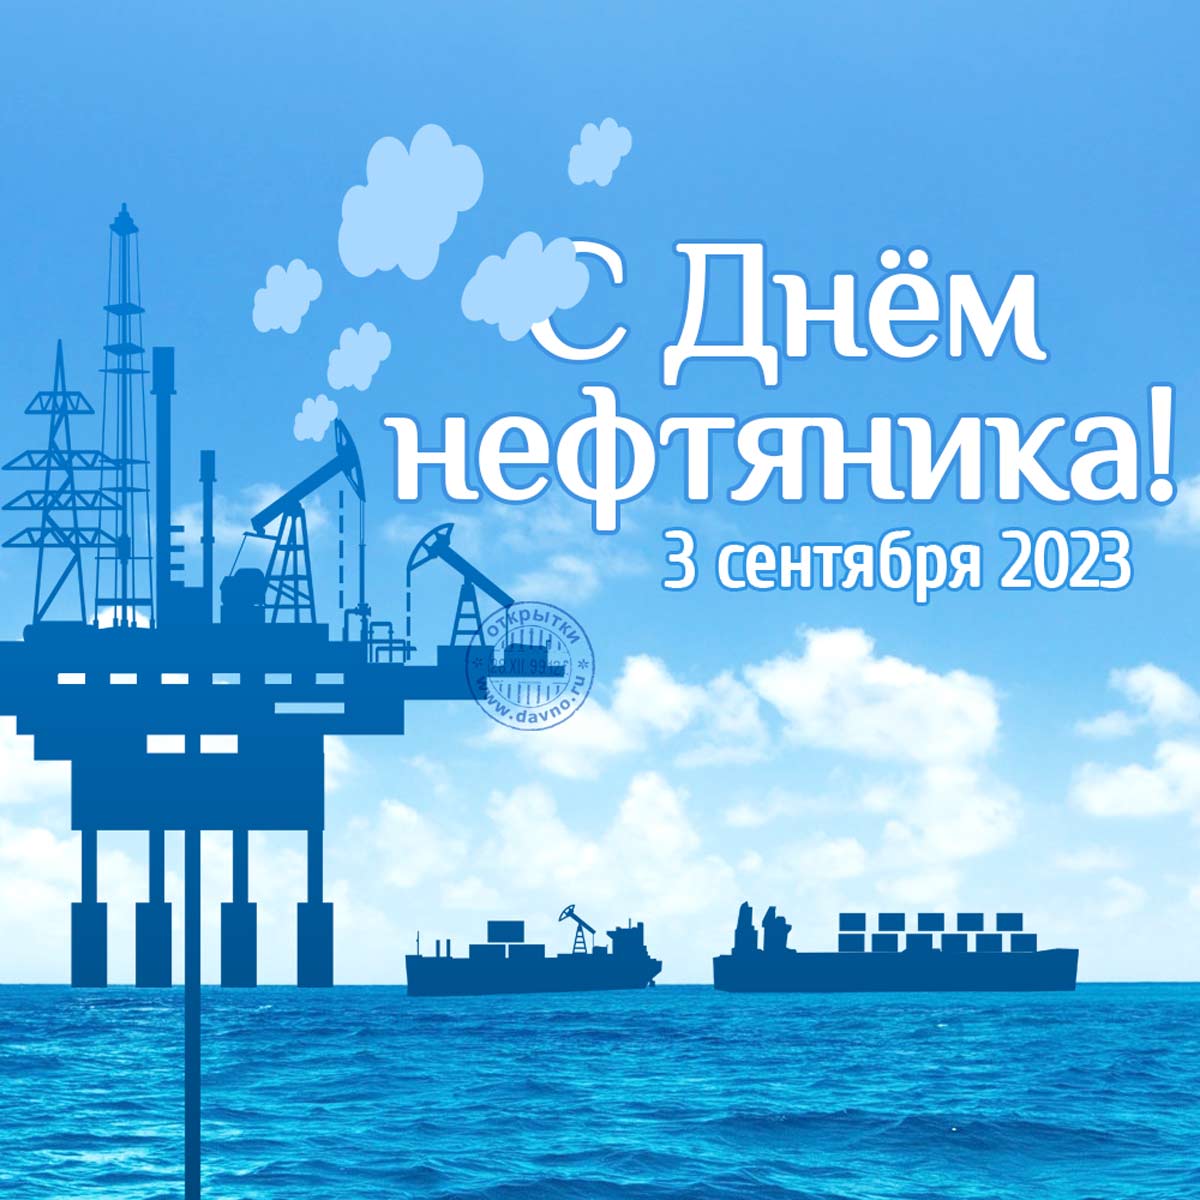 Красивая открытка на День нефтяника (4 сентября 2022)